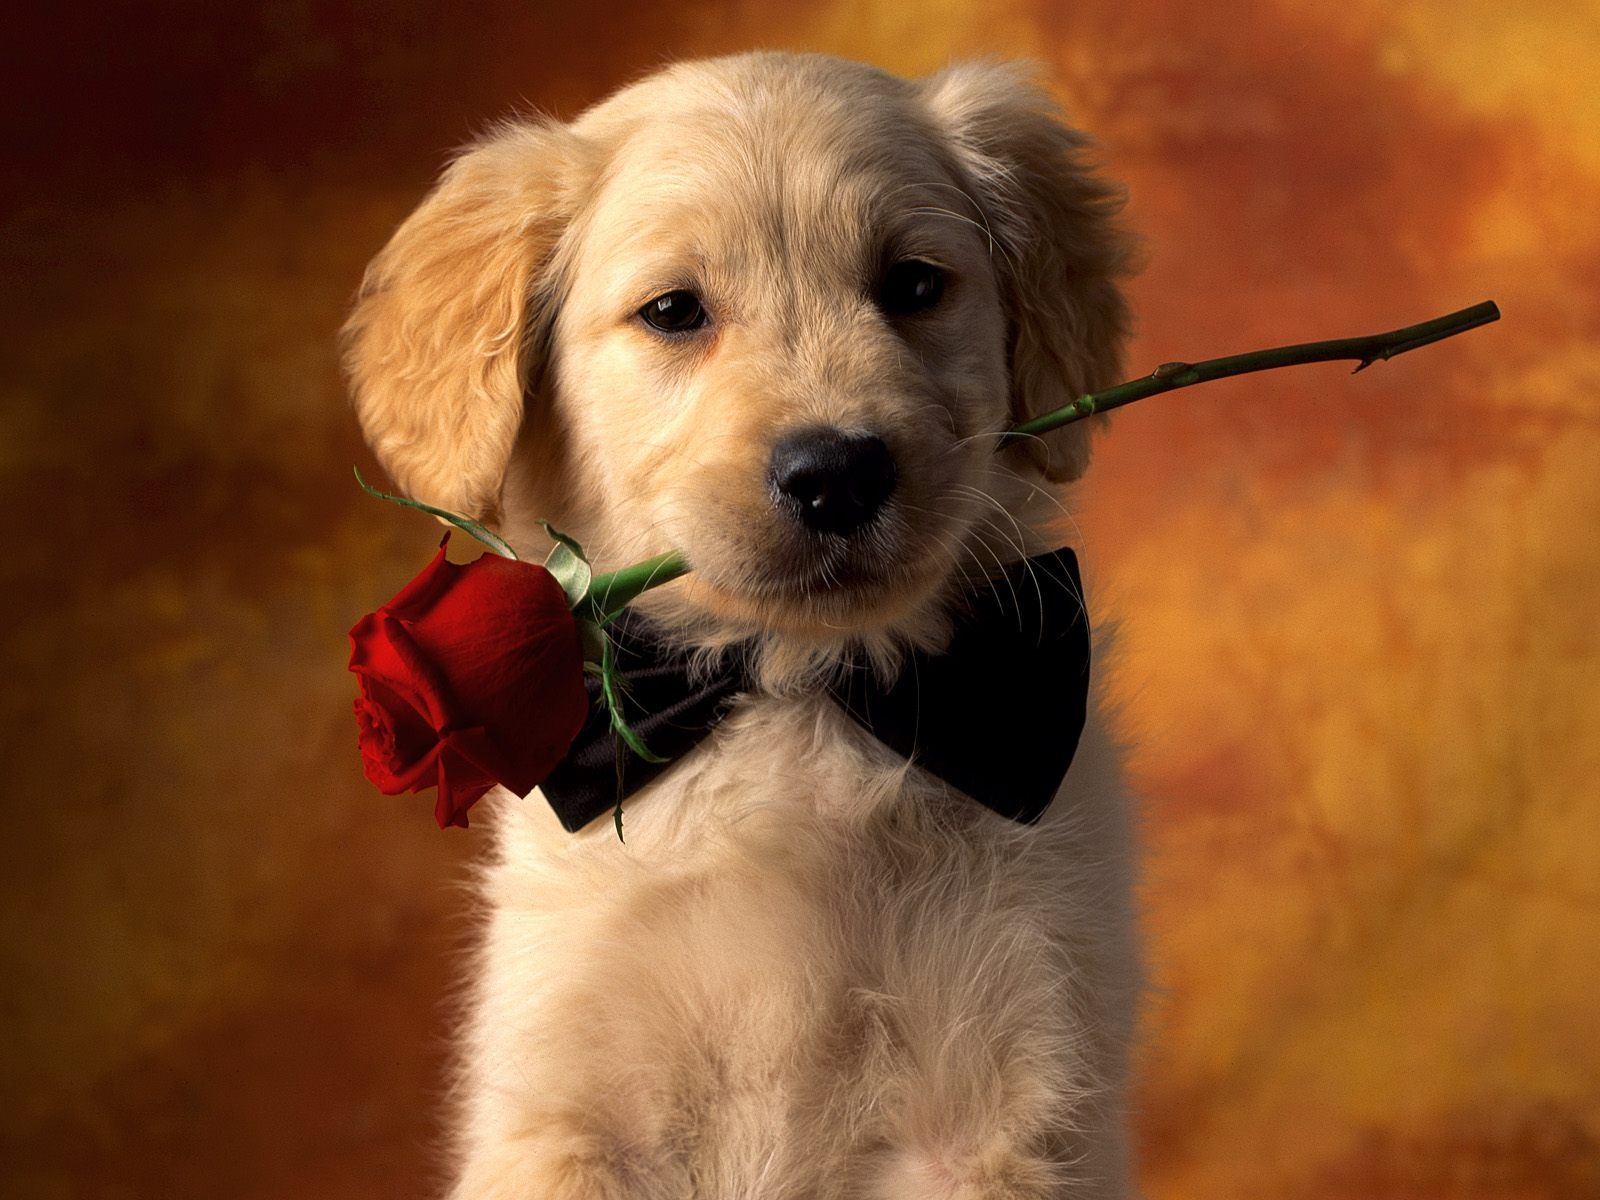 Hãy ngắm nhìn bức hình siêu đáng yêu của chim cú mèo hoa hồng, một chú chó con giống Golden Retriever được tặng hoa hồng cực đáng yêu! Bạn sẽ không thể rời mắt khỏi hình nền máy tính này trong suốt ngày.